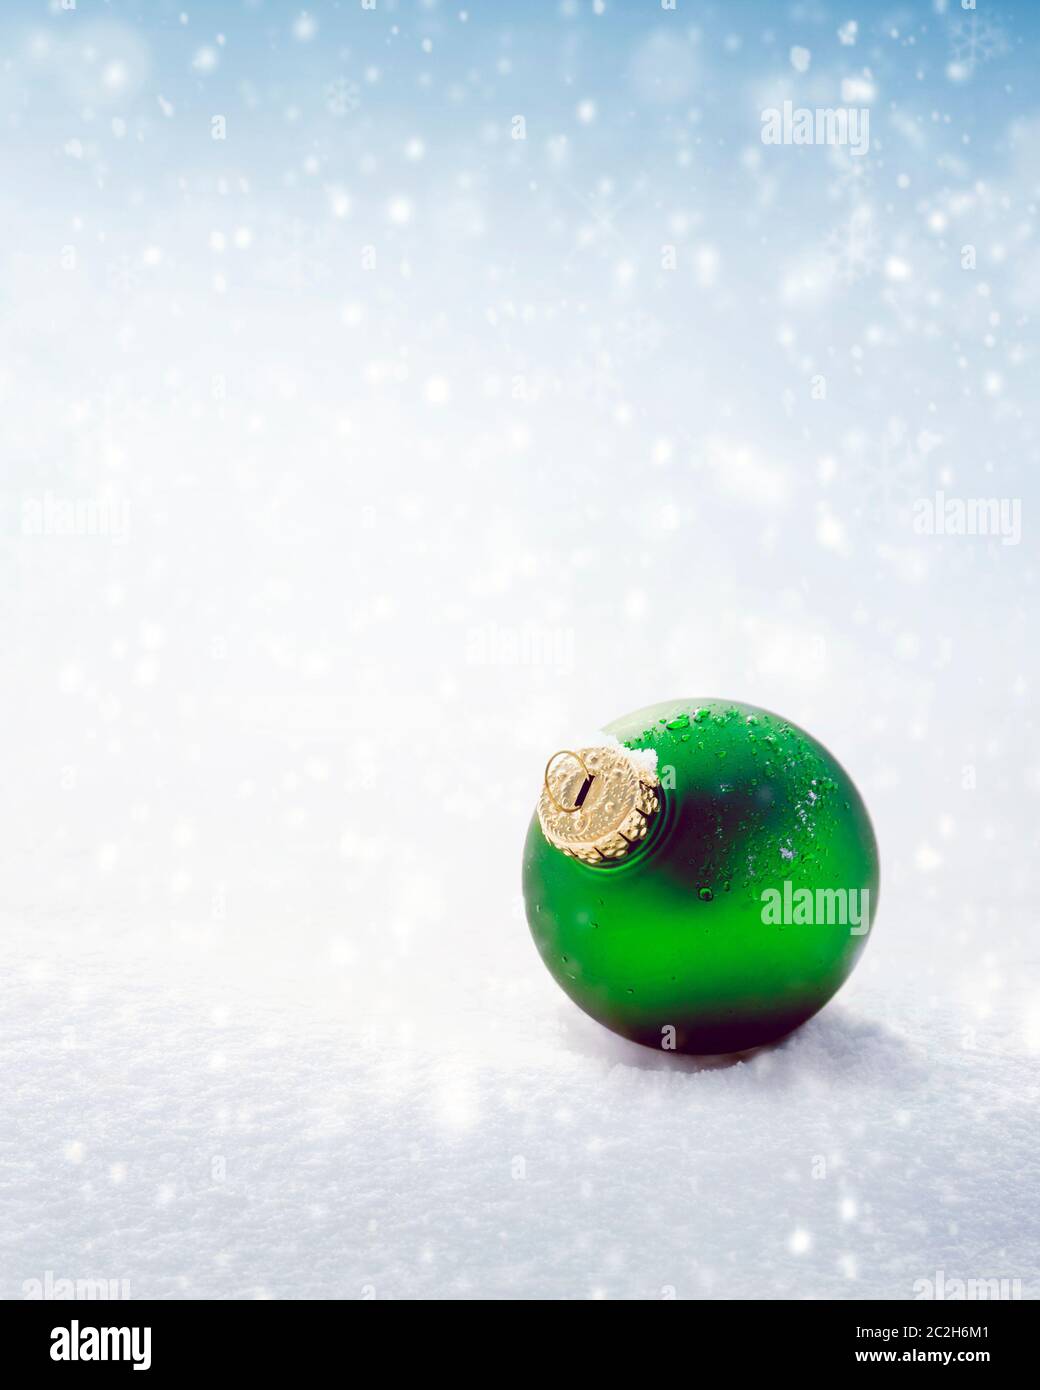 Weihnachtliche grüne Kugel auf weißem Schnee Hintergrund Stockfoto